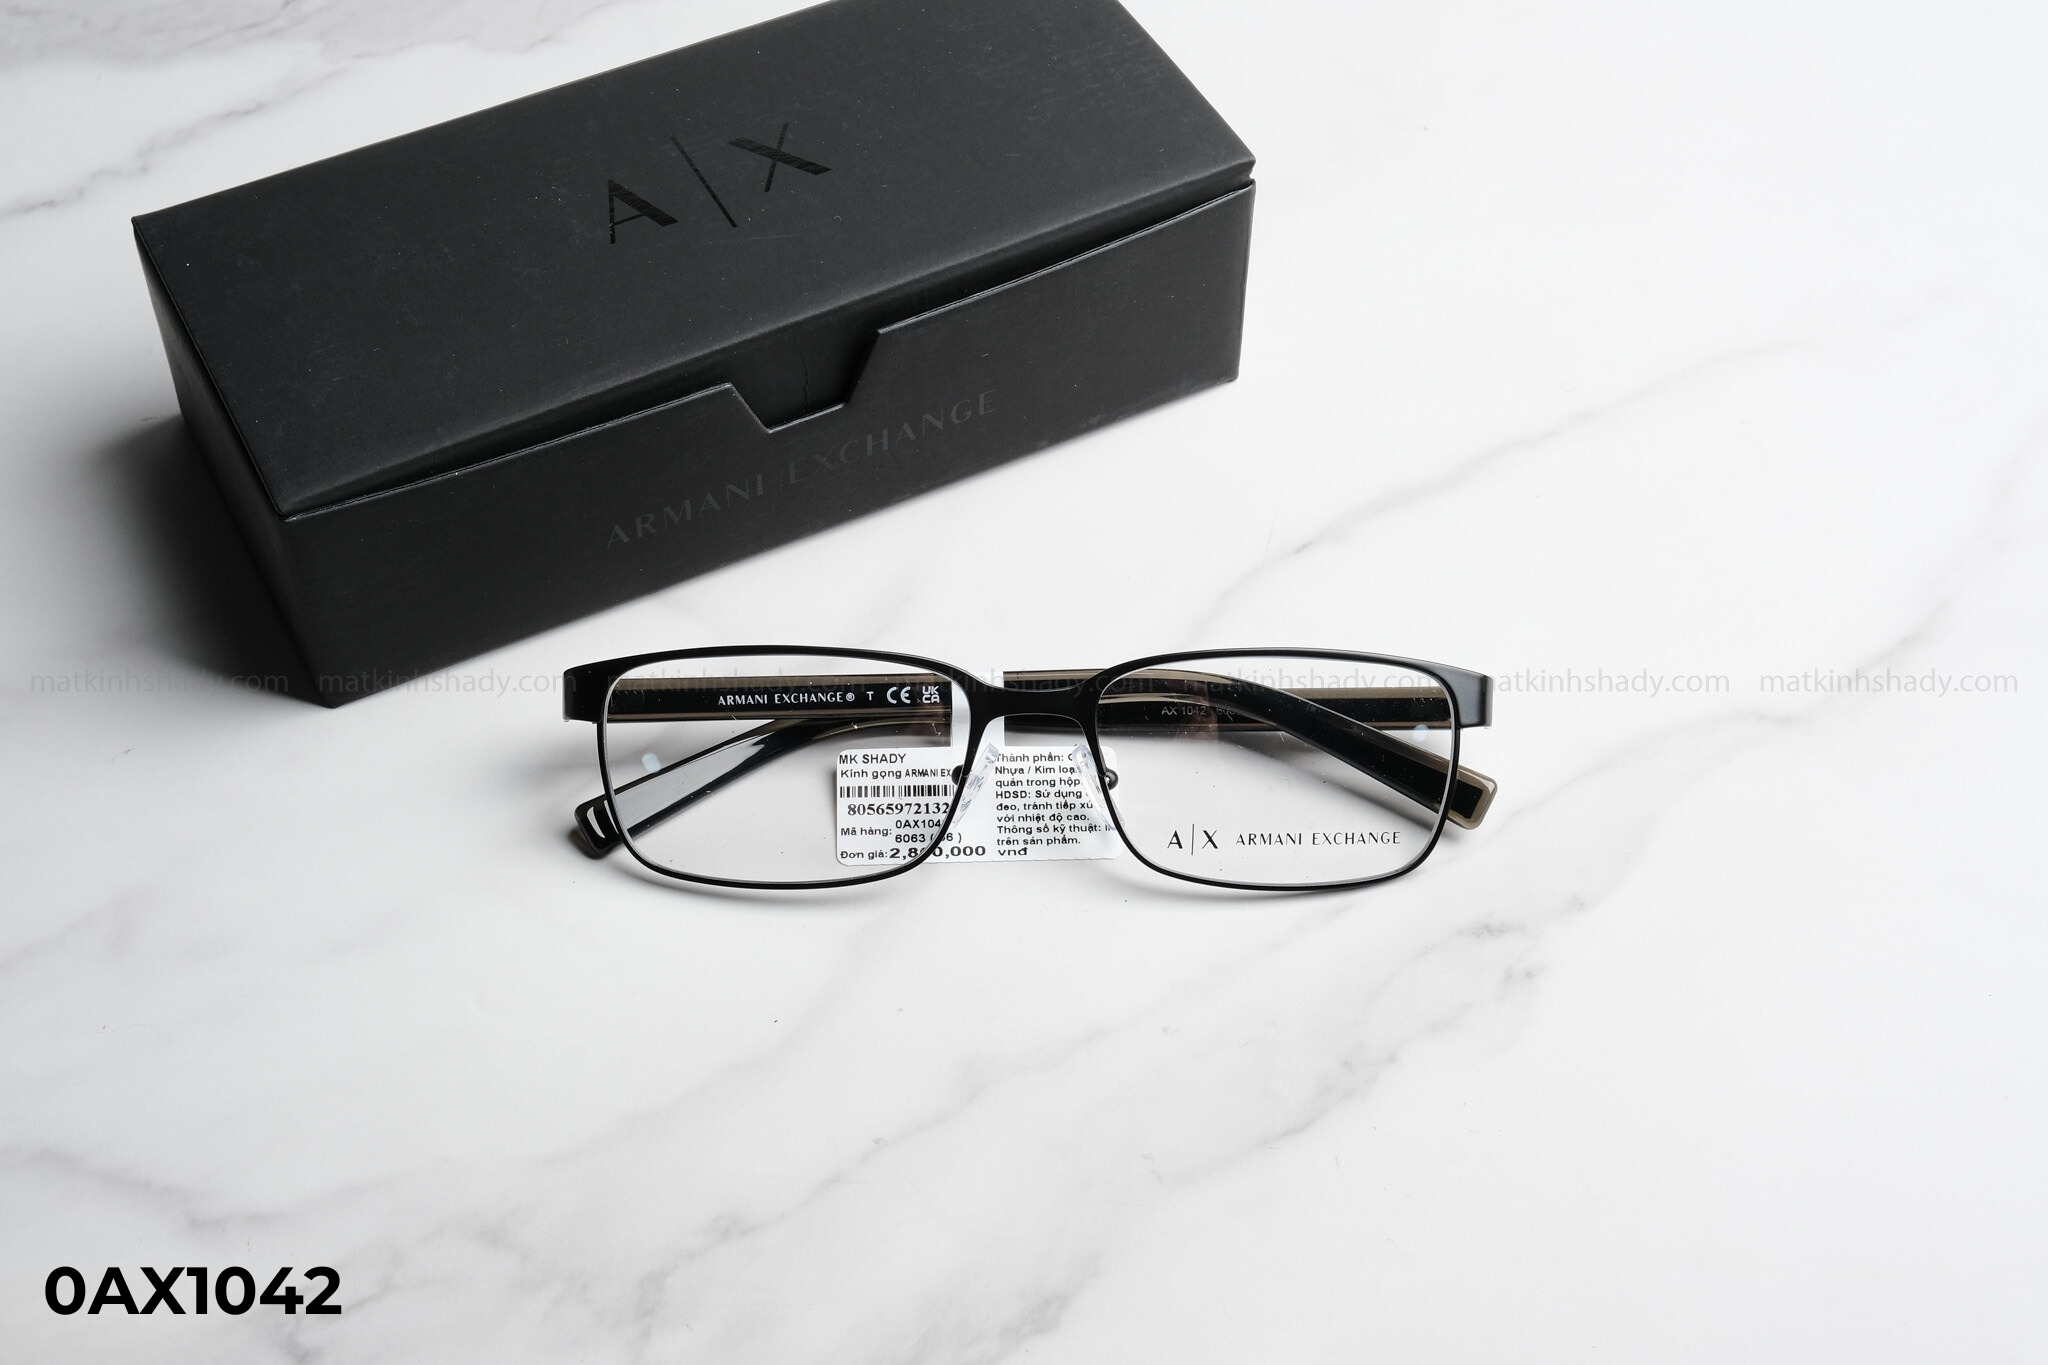  Armani Exchange Eyewear - Glasses - 0AX1042 